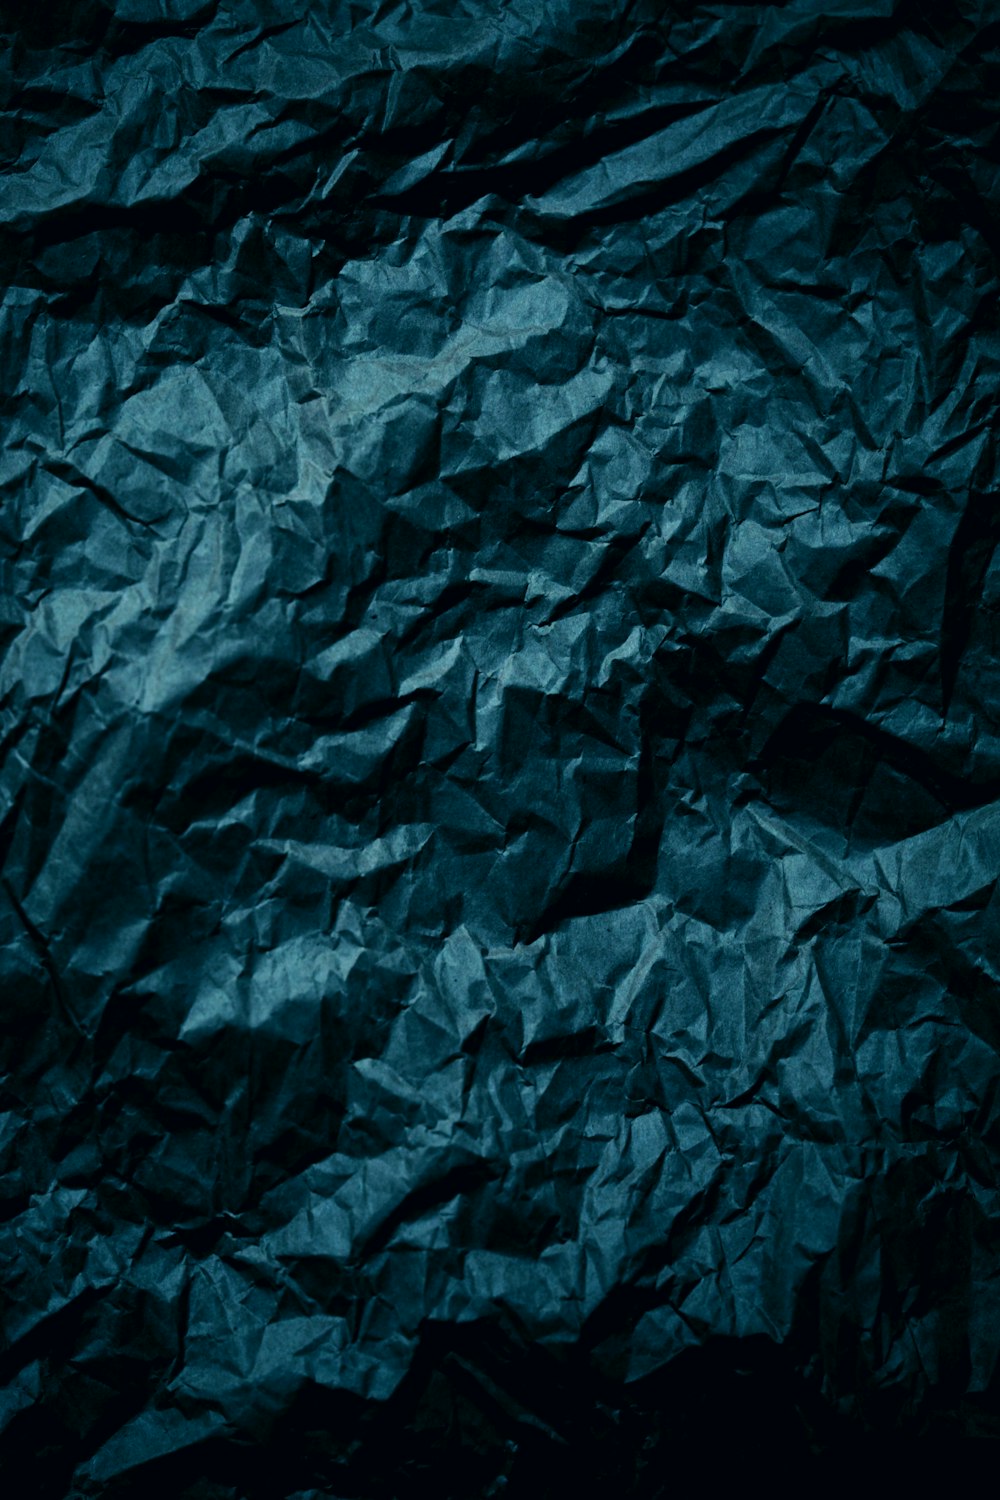 Un fondo de papel arrugado azul oscuro